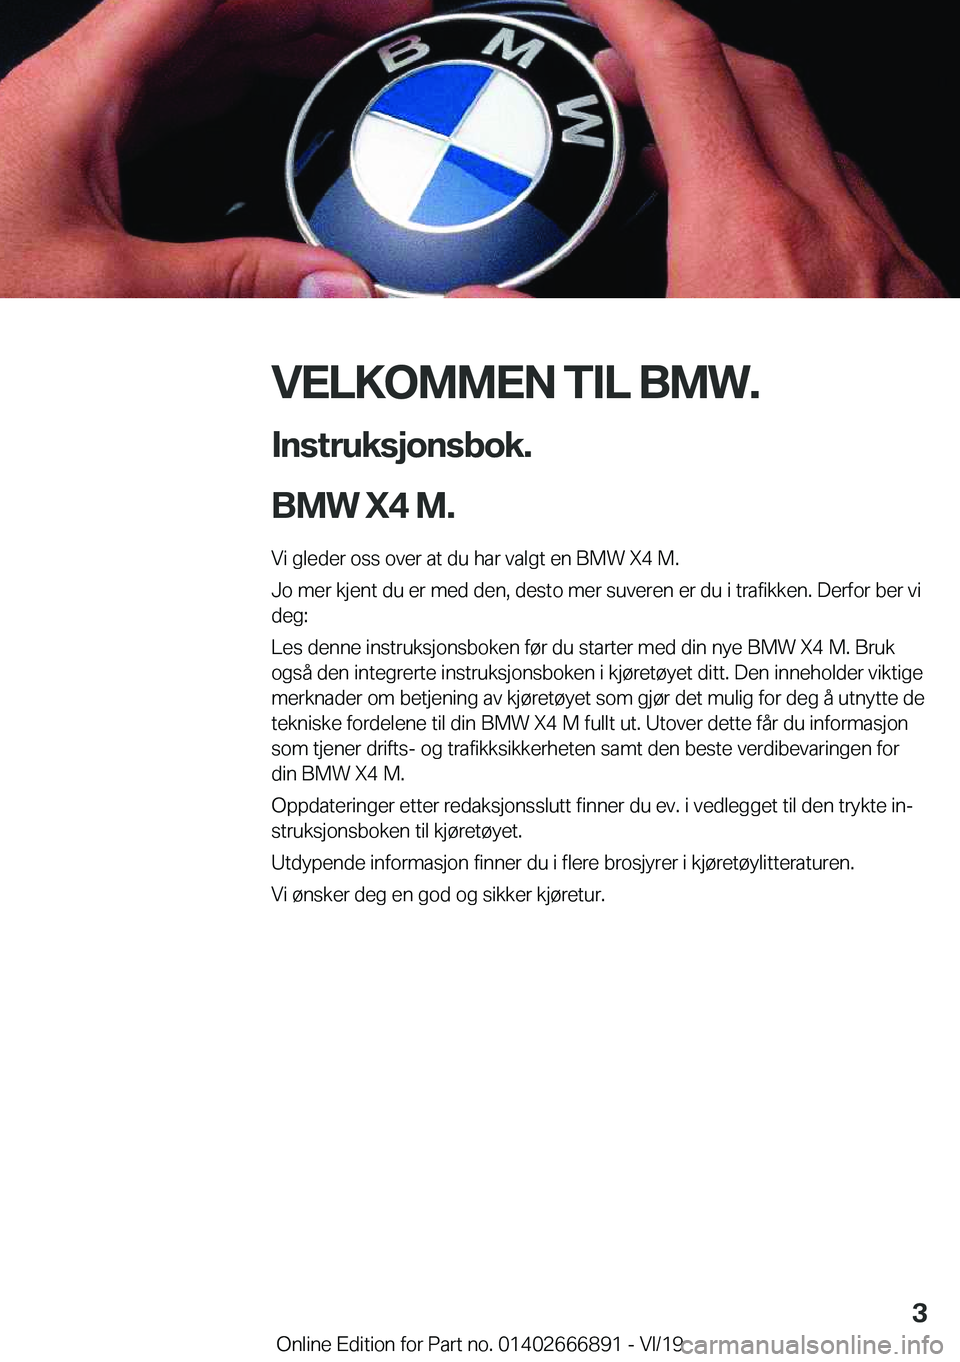 BMW X4 M 2020  InstruksjonsbØker (in Norwegian) �V�E�L�K�O�M�M�E�N��T�I�L��B�M�W�.�I�n�s�t�r�u�k�s�j�o�n�s�b�o�k�.
�B�M�W��X�4��M�.
�V�i��g�l�e�d�e�r��o�s�s��o�v�e�r��a�t��d�u��h�a�r��v�a�l�g�t��e�n��B�M�W��X�4��M�.
�J�o��m�e�r��k�